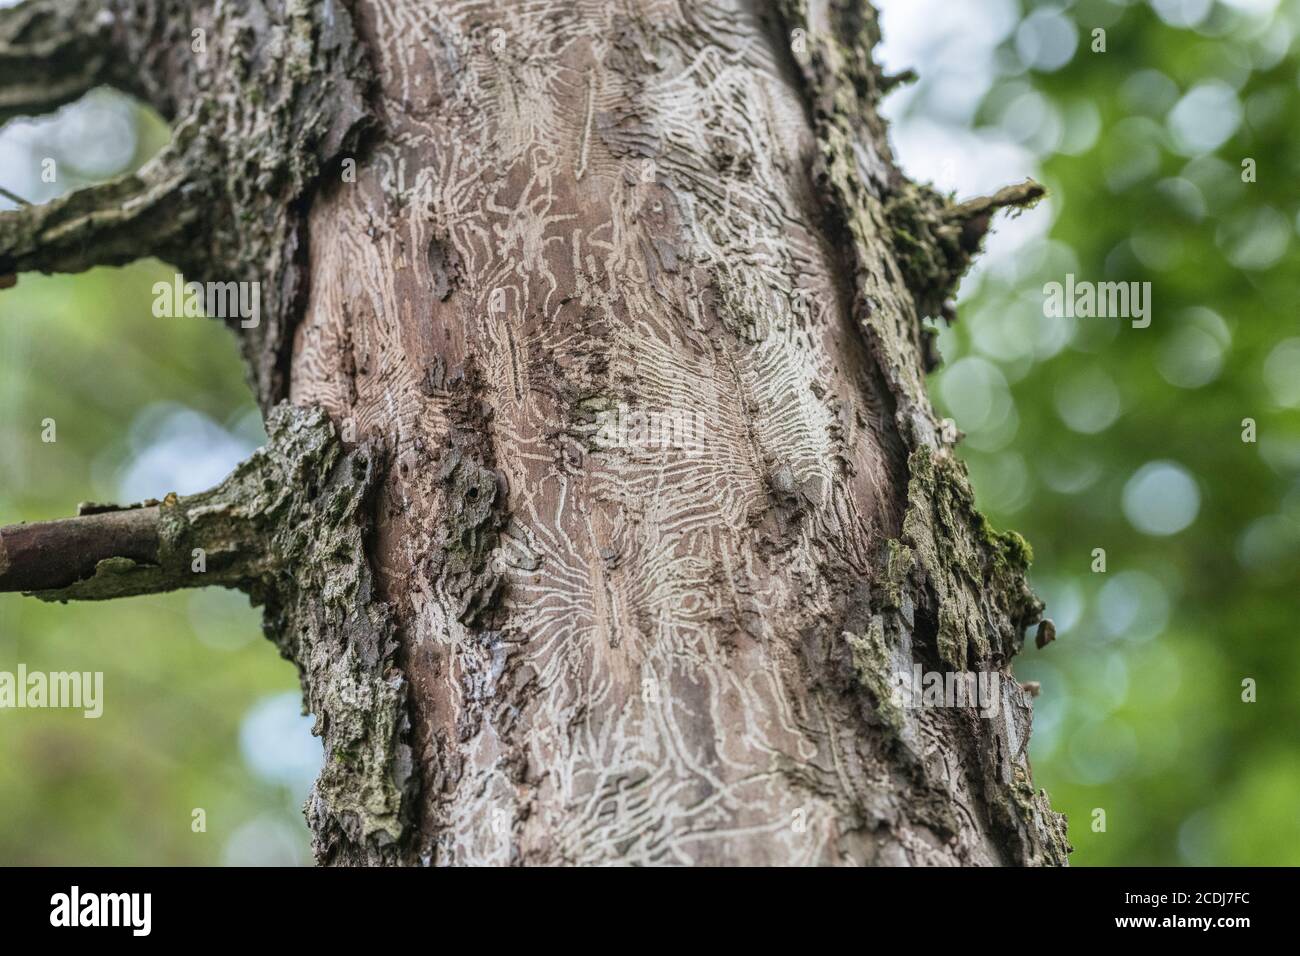 Tell-tale tunnel noia tracce di Elm Bark Beetle che introduce il fungo Ofiostoma ulmi che infetta l'albero con la malattia olandese Elm, DED. Foto Stock